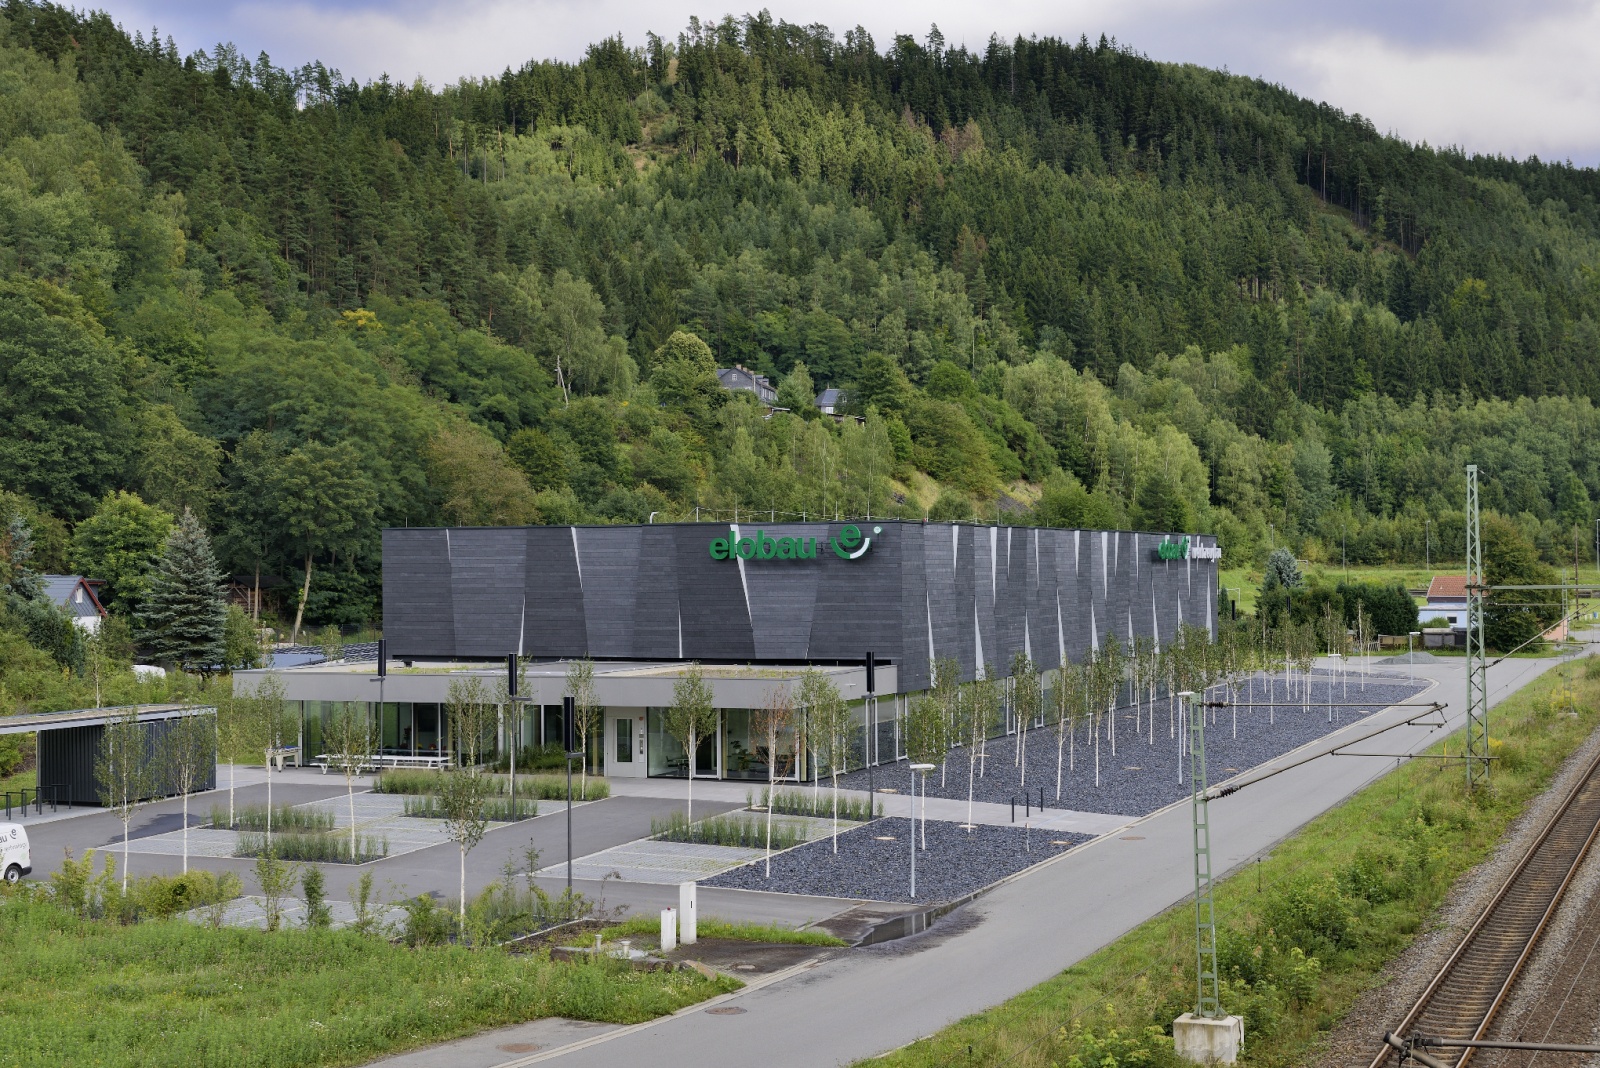 Betriebsgebäude in Probstzella, Fernwirkung, Blick des Vorbeifahrenden, Bild: Fotodesign Peters, Amerang